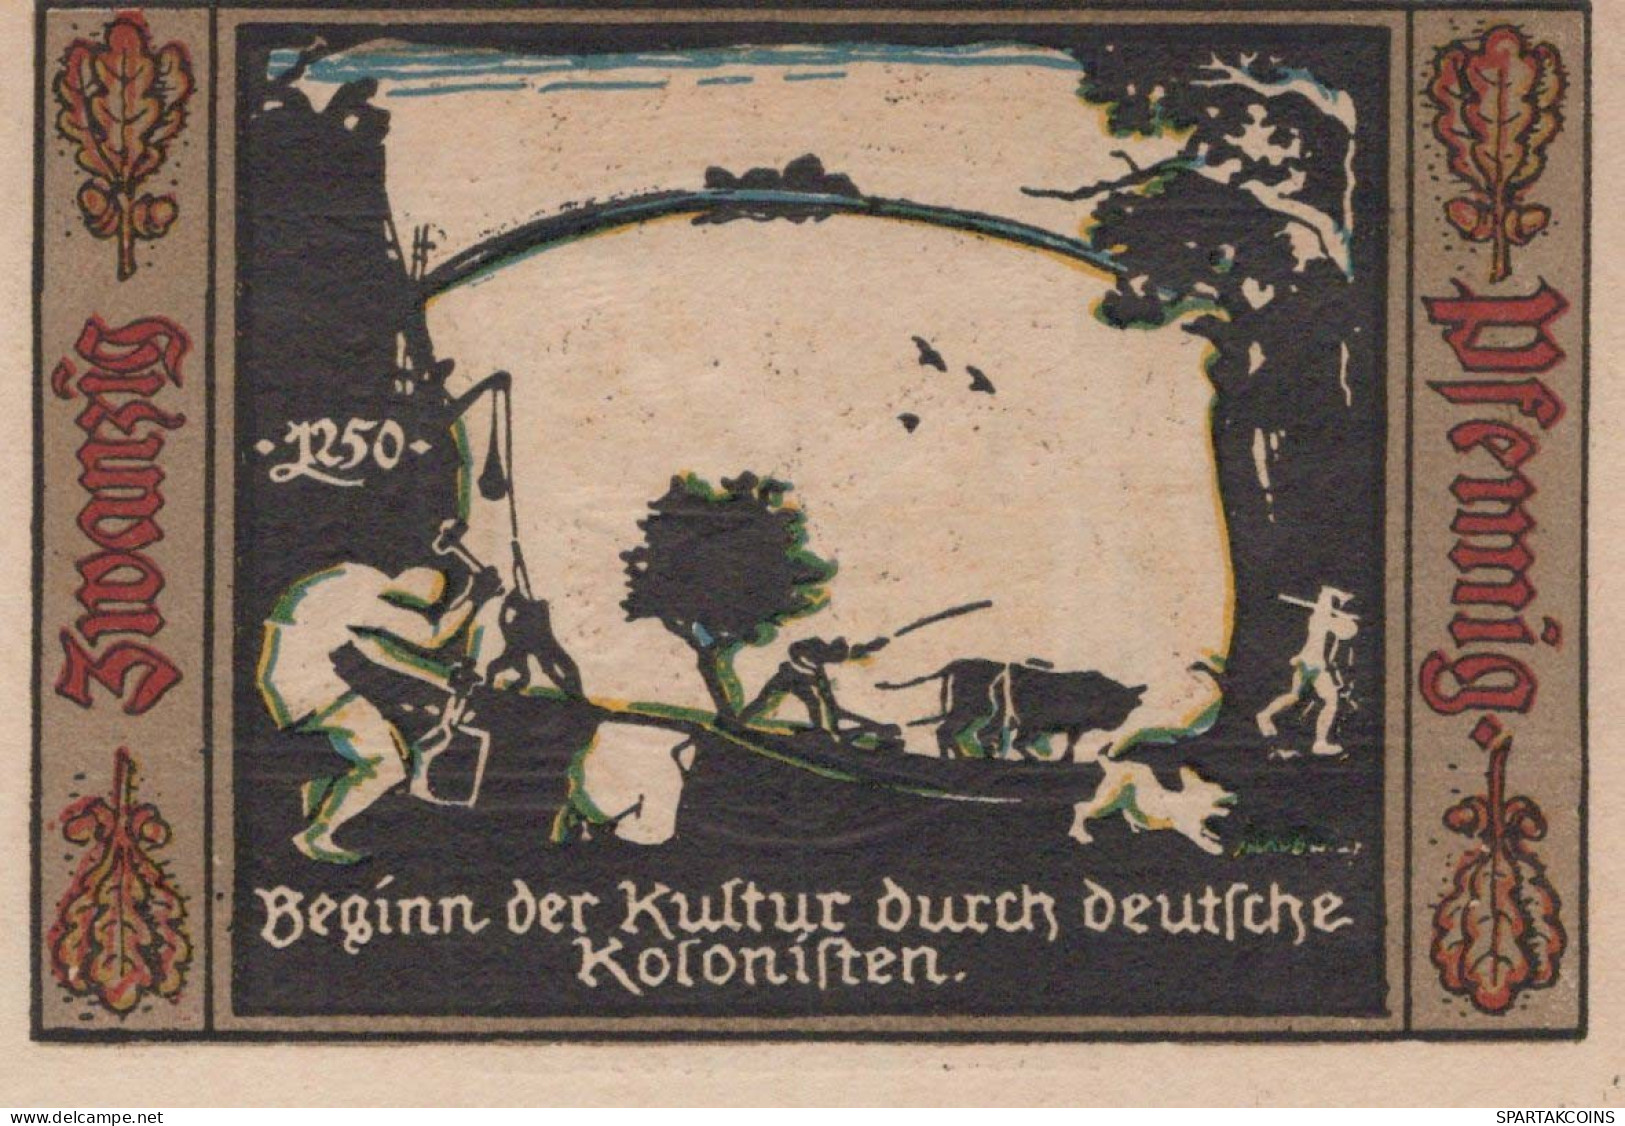 20 PFENNIG 1921 Stadt FÜRSTENWALDE Brandenburg DEUTSCHLAND Notgeld #PJ259 - [11] Local Banknote Issues